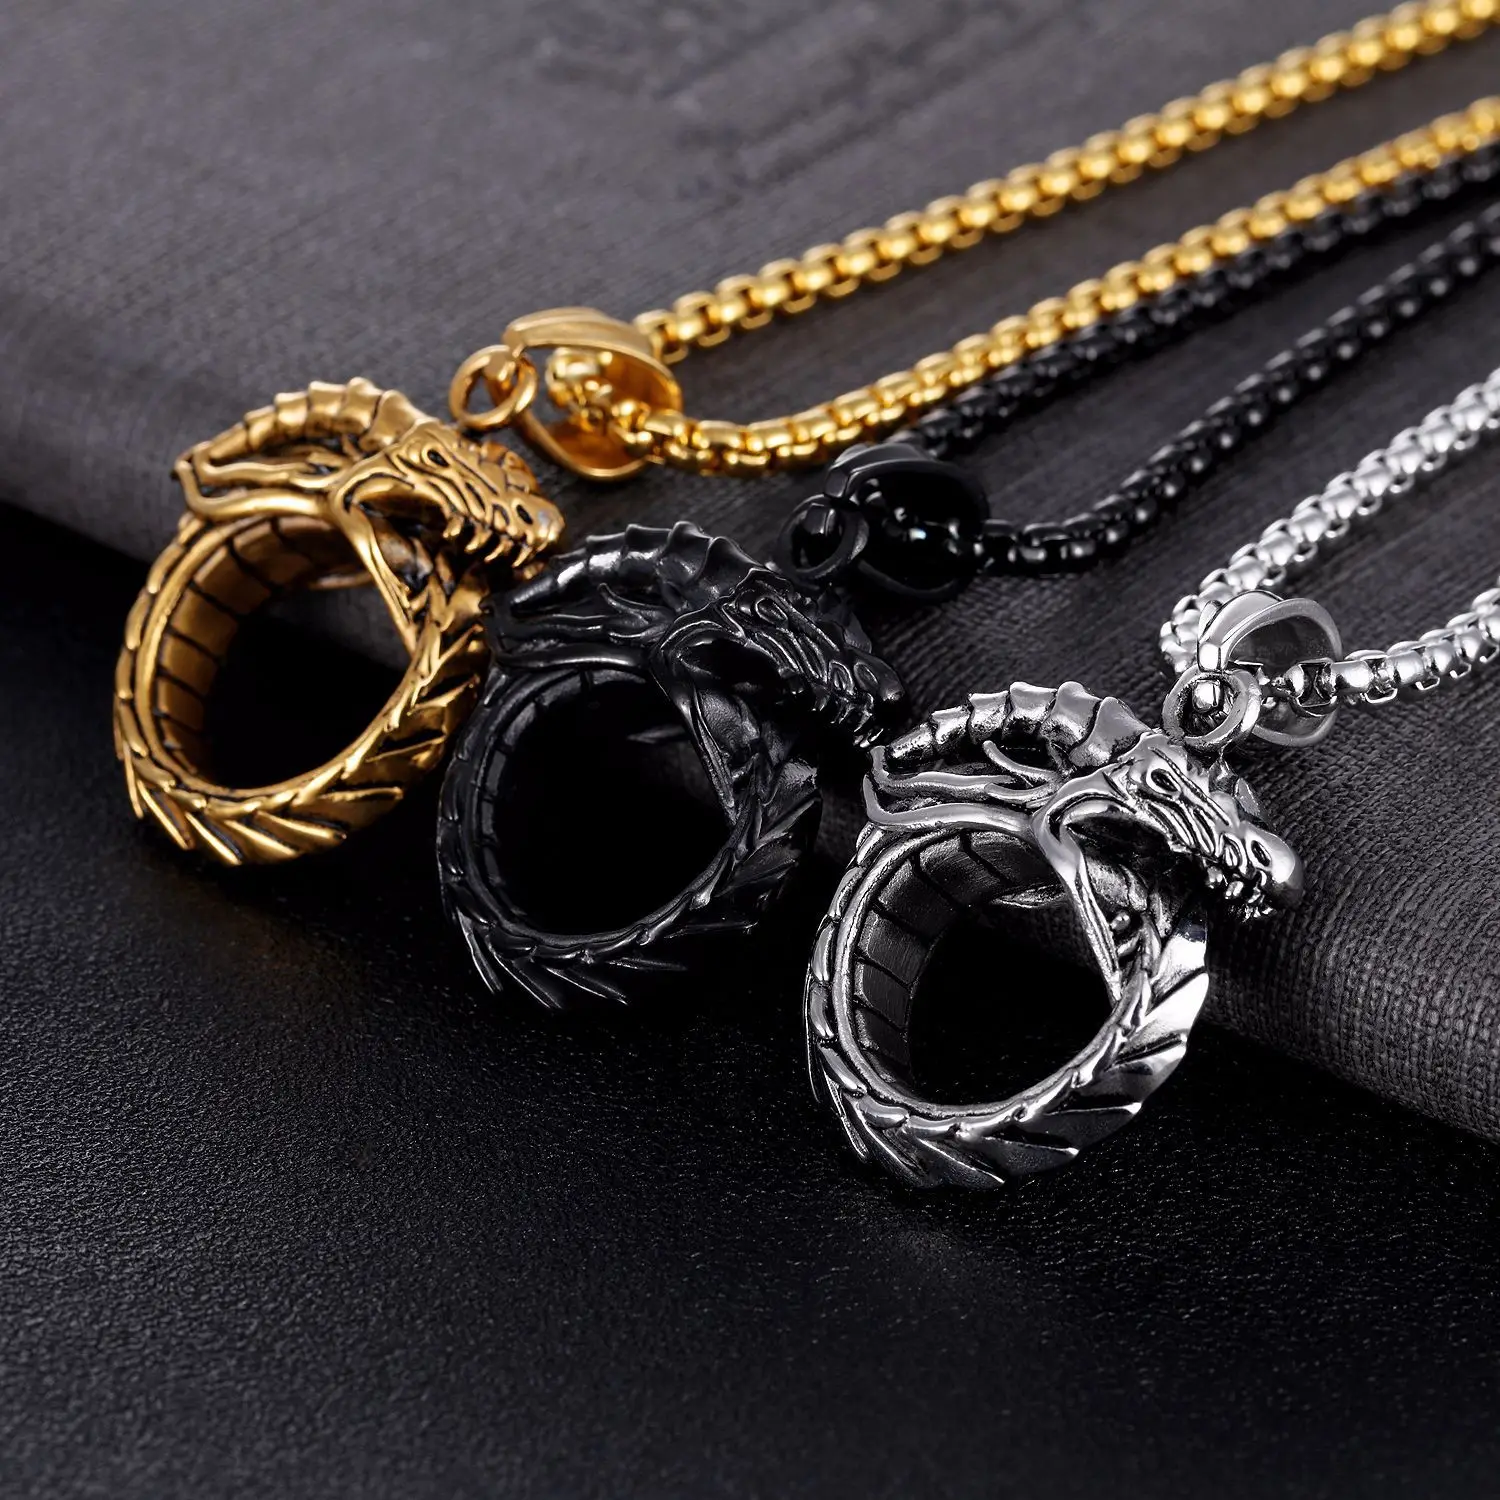 Ретро золото/черный цвета Ouroboros дракон кулон ожерелье модная классическая титановая сталь мужское ожерелье ювелирные изделия colar masculino